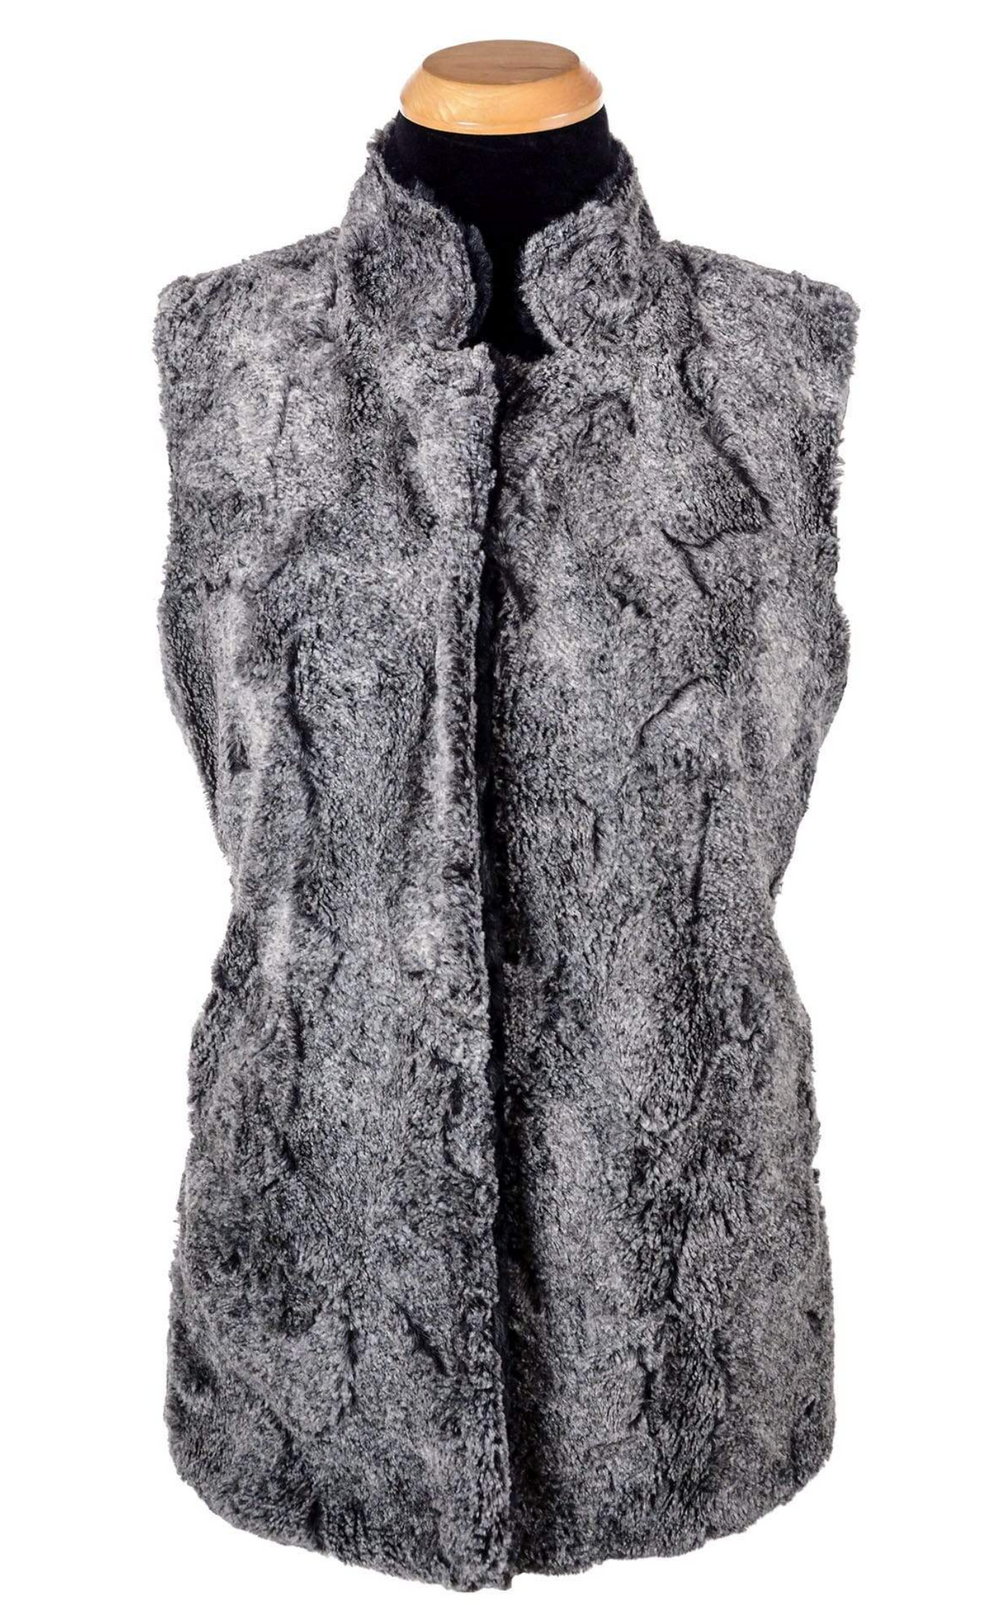 Pandemonium faux fur vest, reversible mandarin collar SALE Sizes M, L